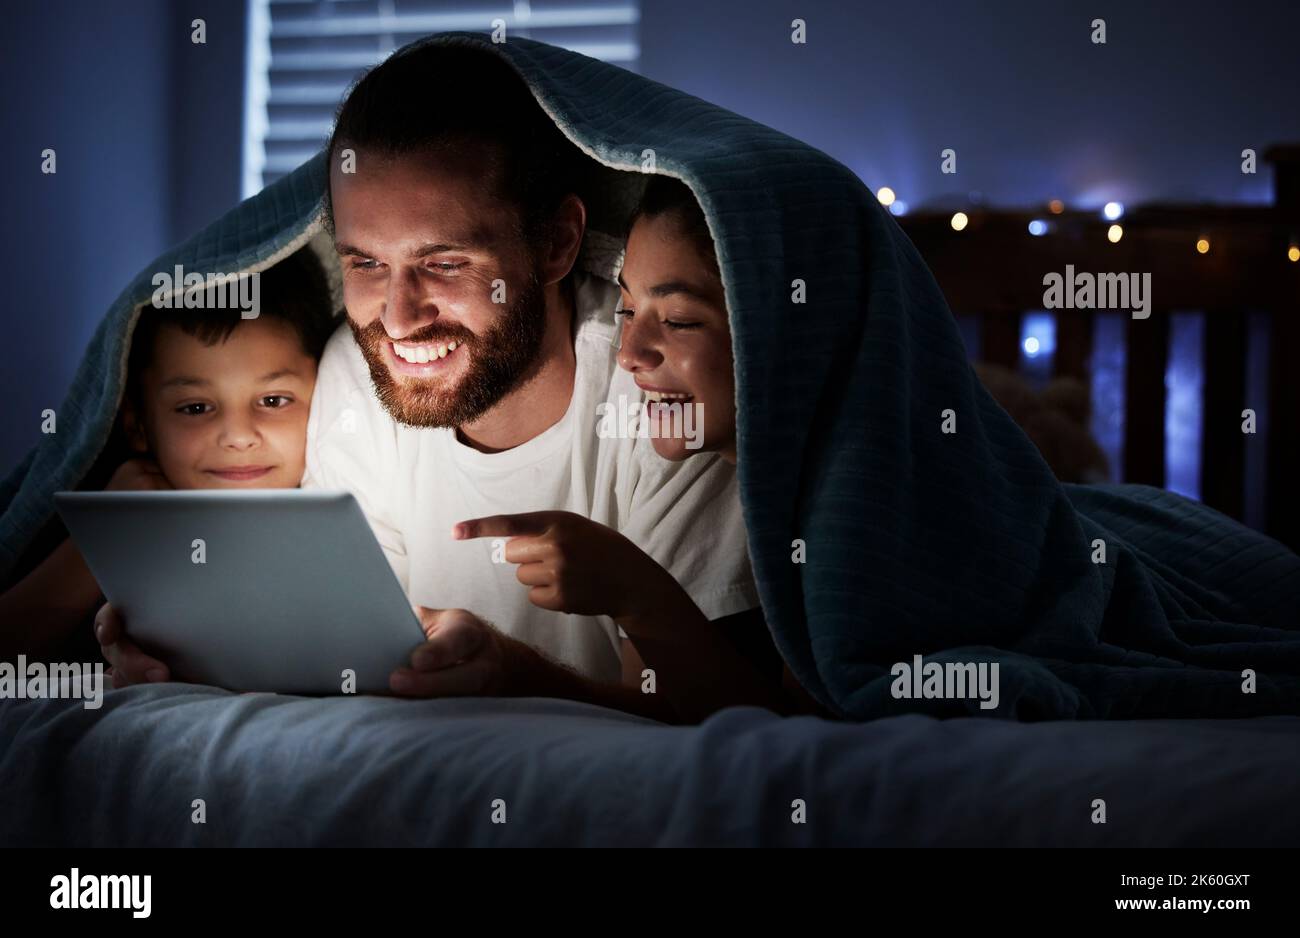 Glücklicher kaukasischer Familienvater mit zwei Kindern, die ein digitales Tablet benutzen, das in der Nacht unter einer Decke im Dunkeln liegt und deren Gesichter von ihnen erleuchtet sind Stockfoto